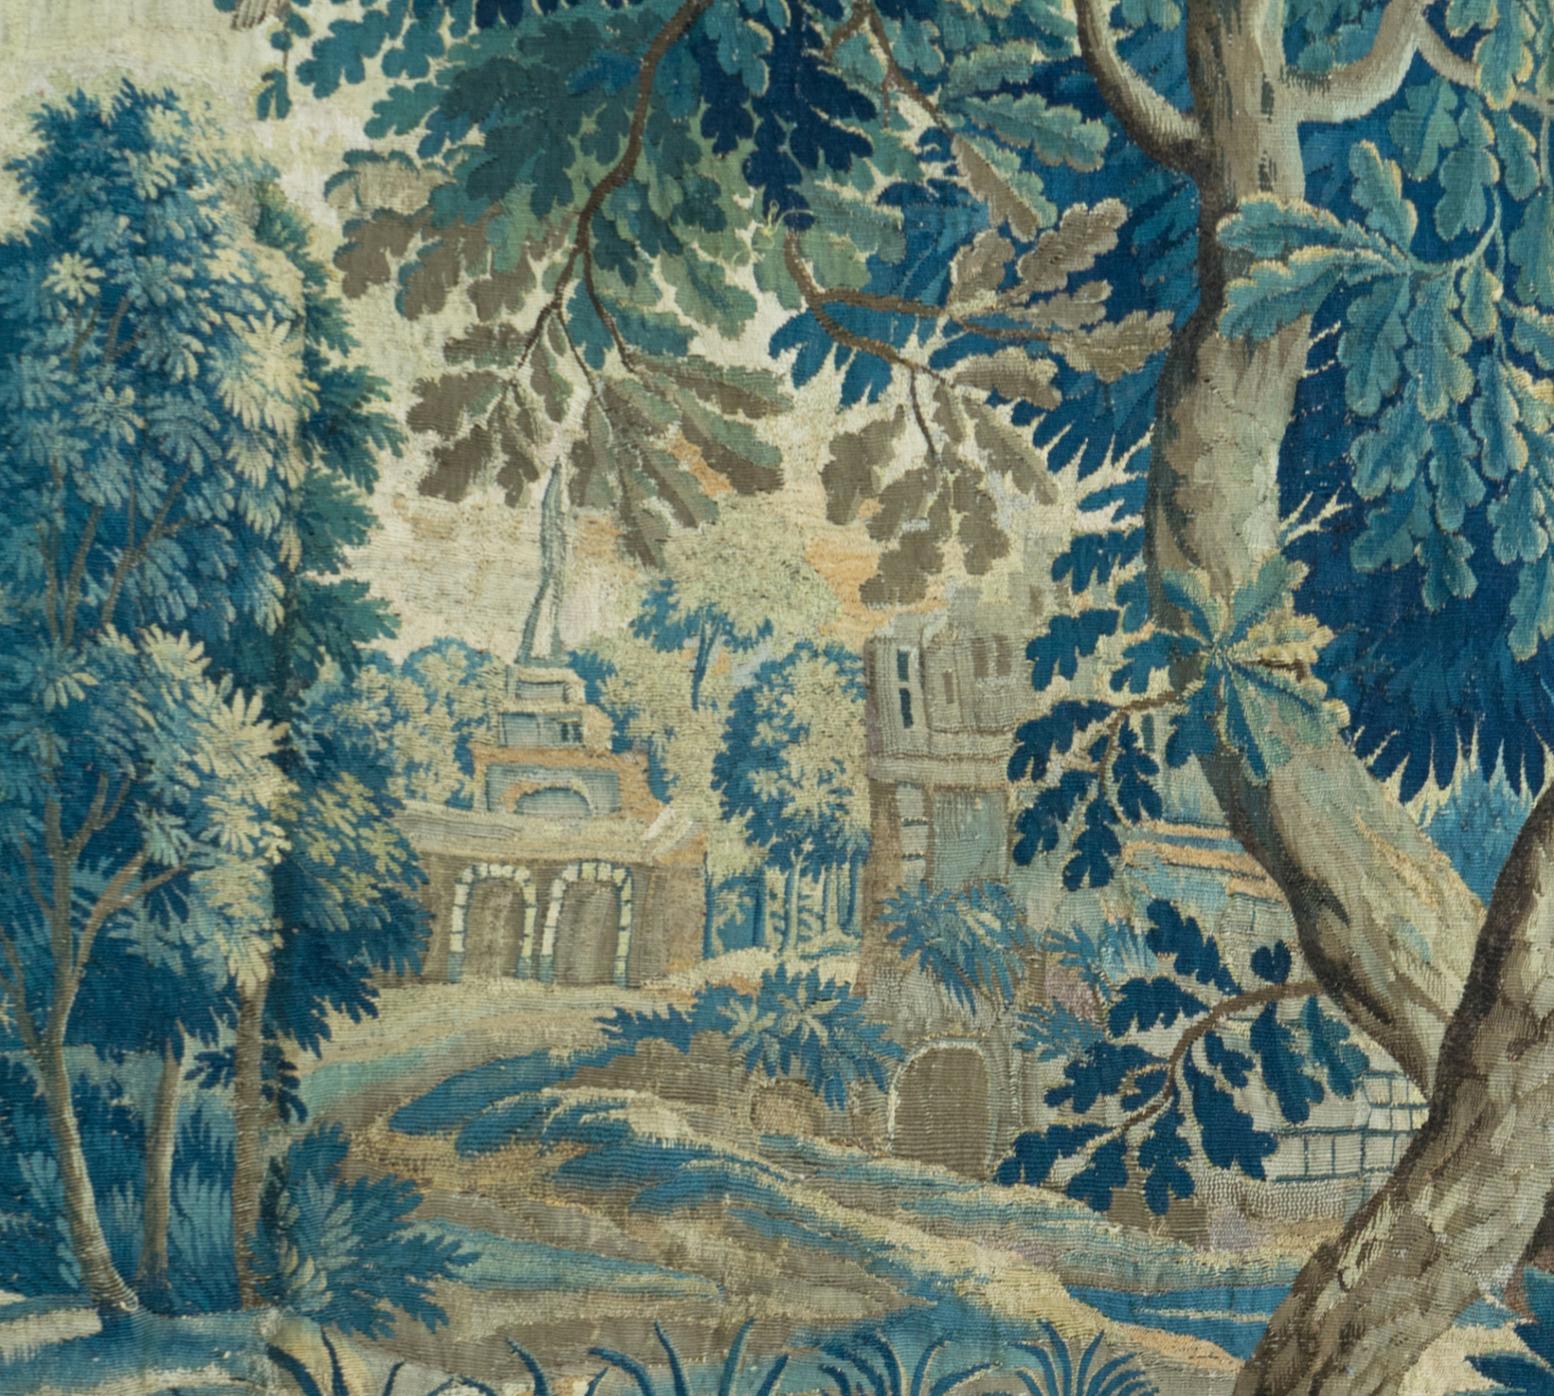 Il s'agit d'une magnifique tapisserie de paysage en verdure flamande du XVIIIe siècle, représentant une belle et riche scène estivale d'une campagne avec des arbres et une végétation luxuriante, des coqs, des oiseaux nourrissant leurs petits, et des